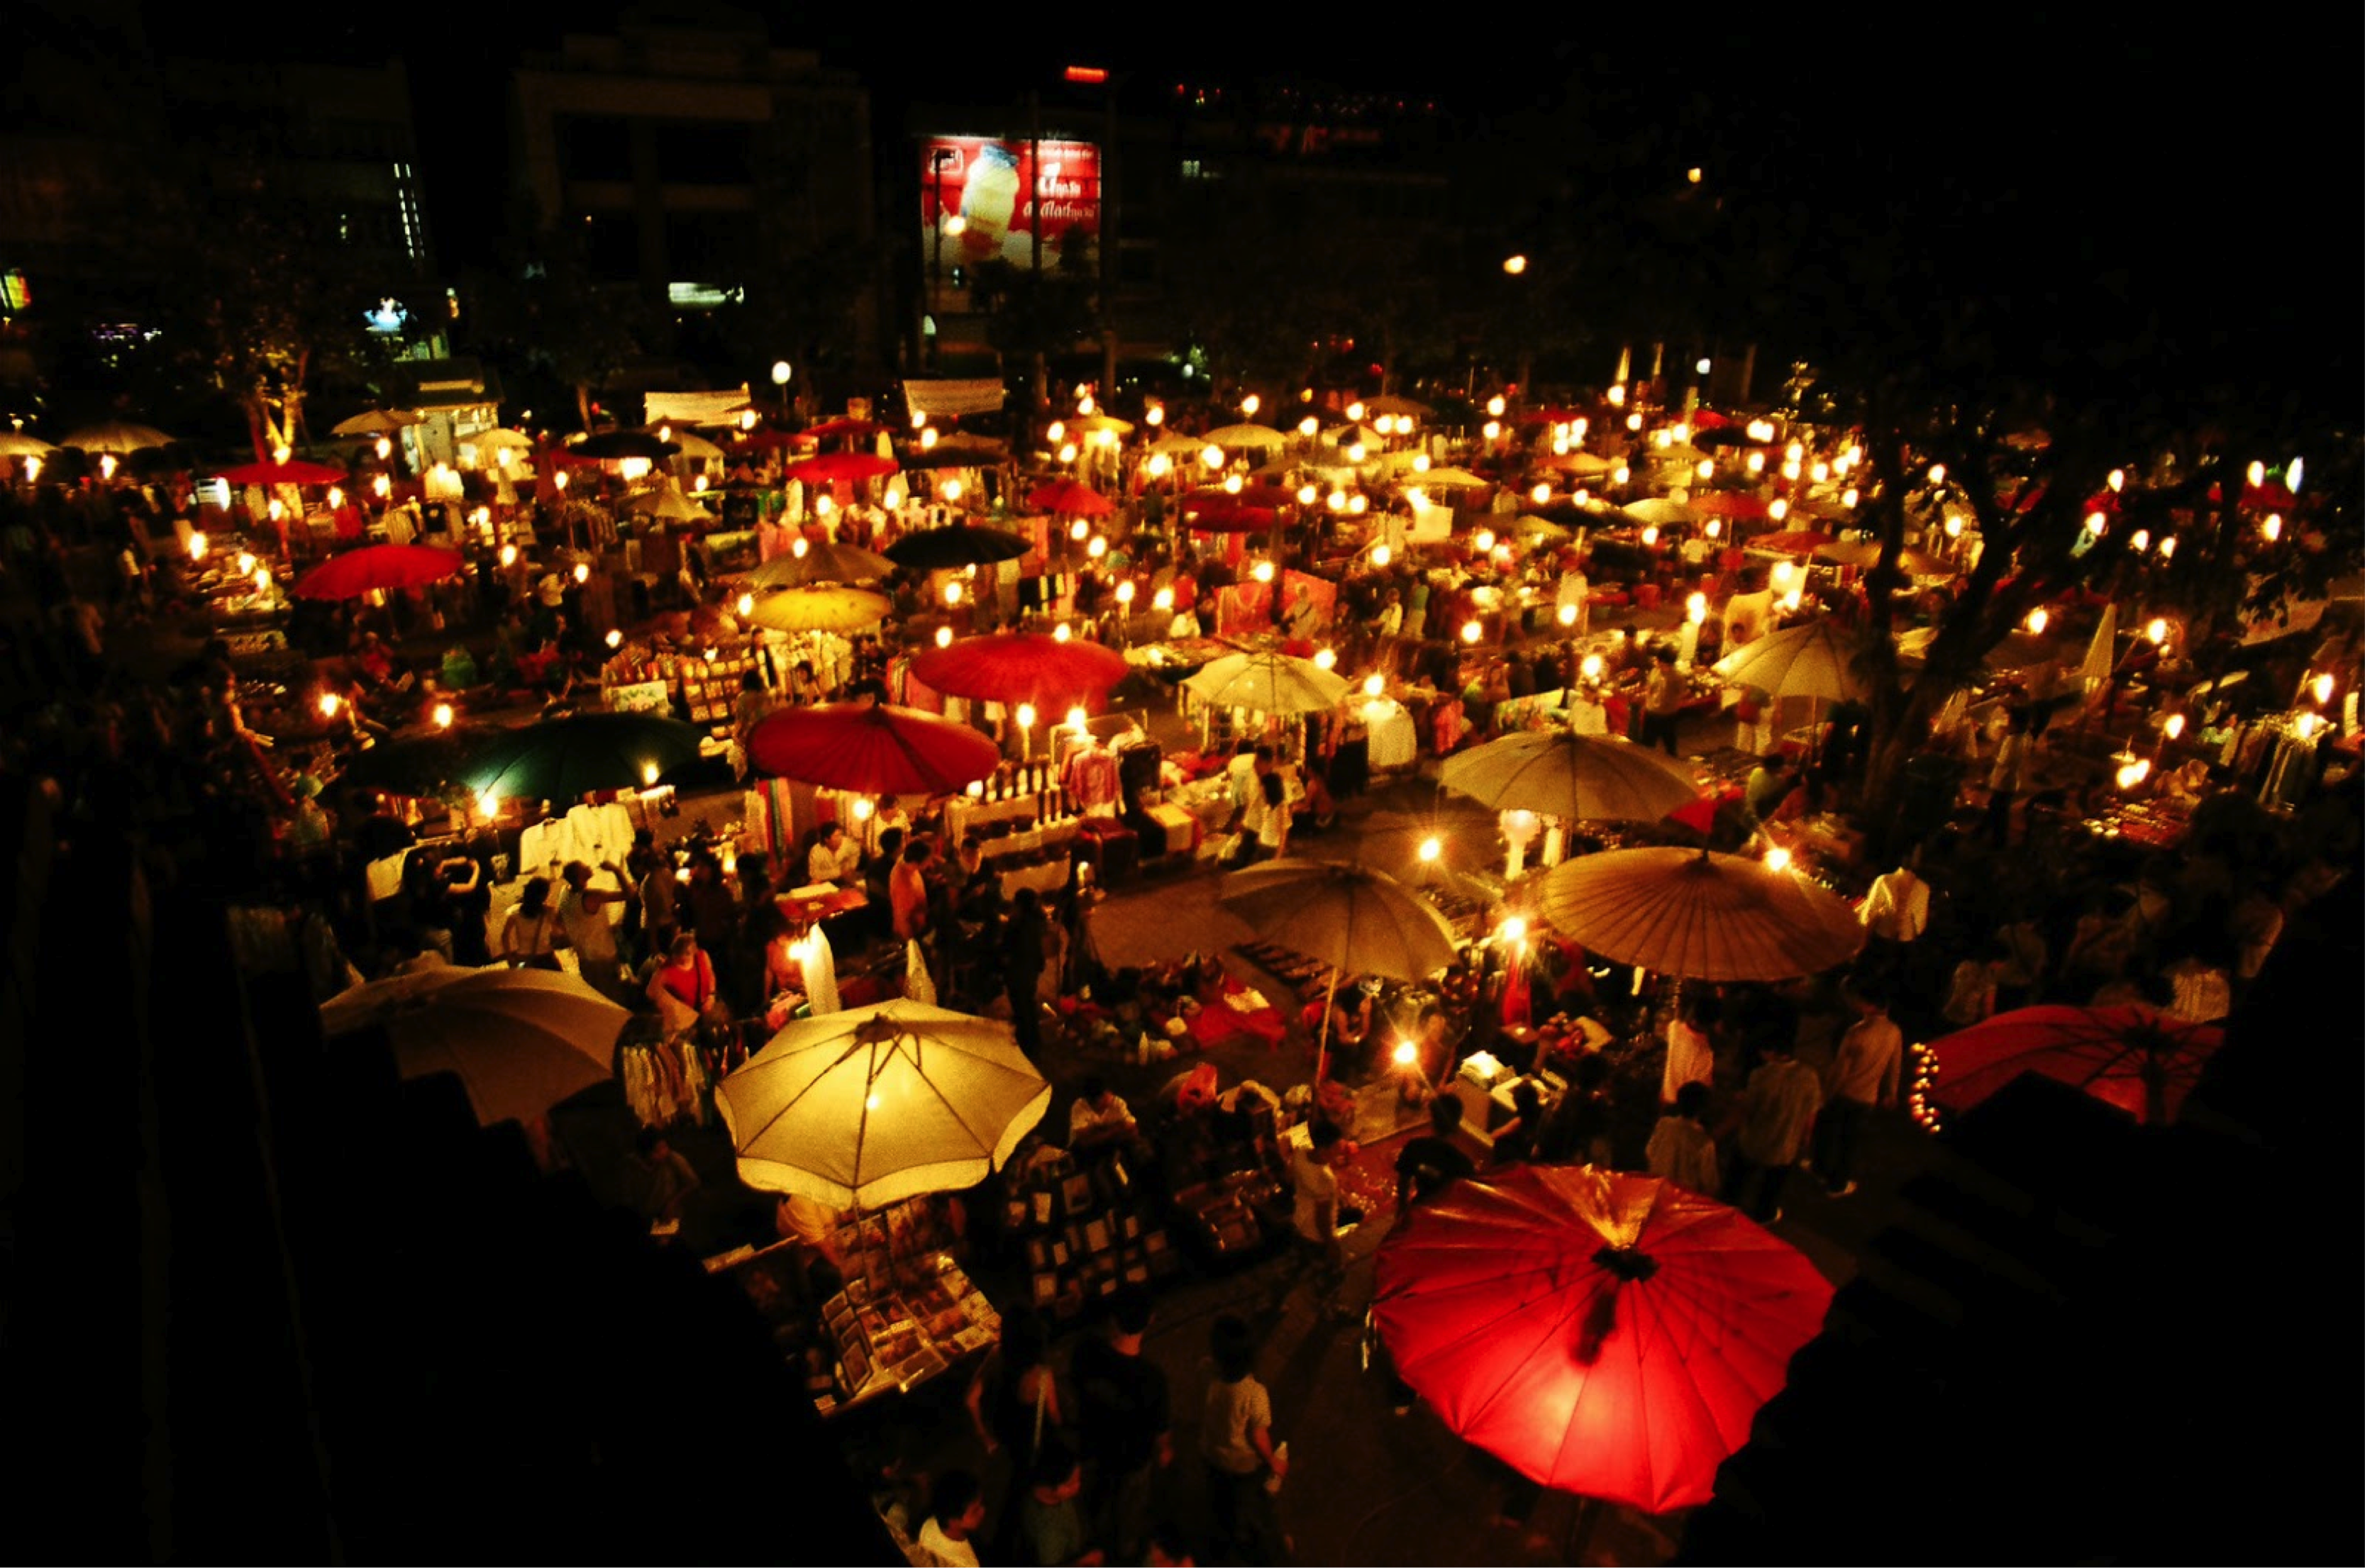 Chiang Mai night bazaar